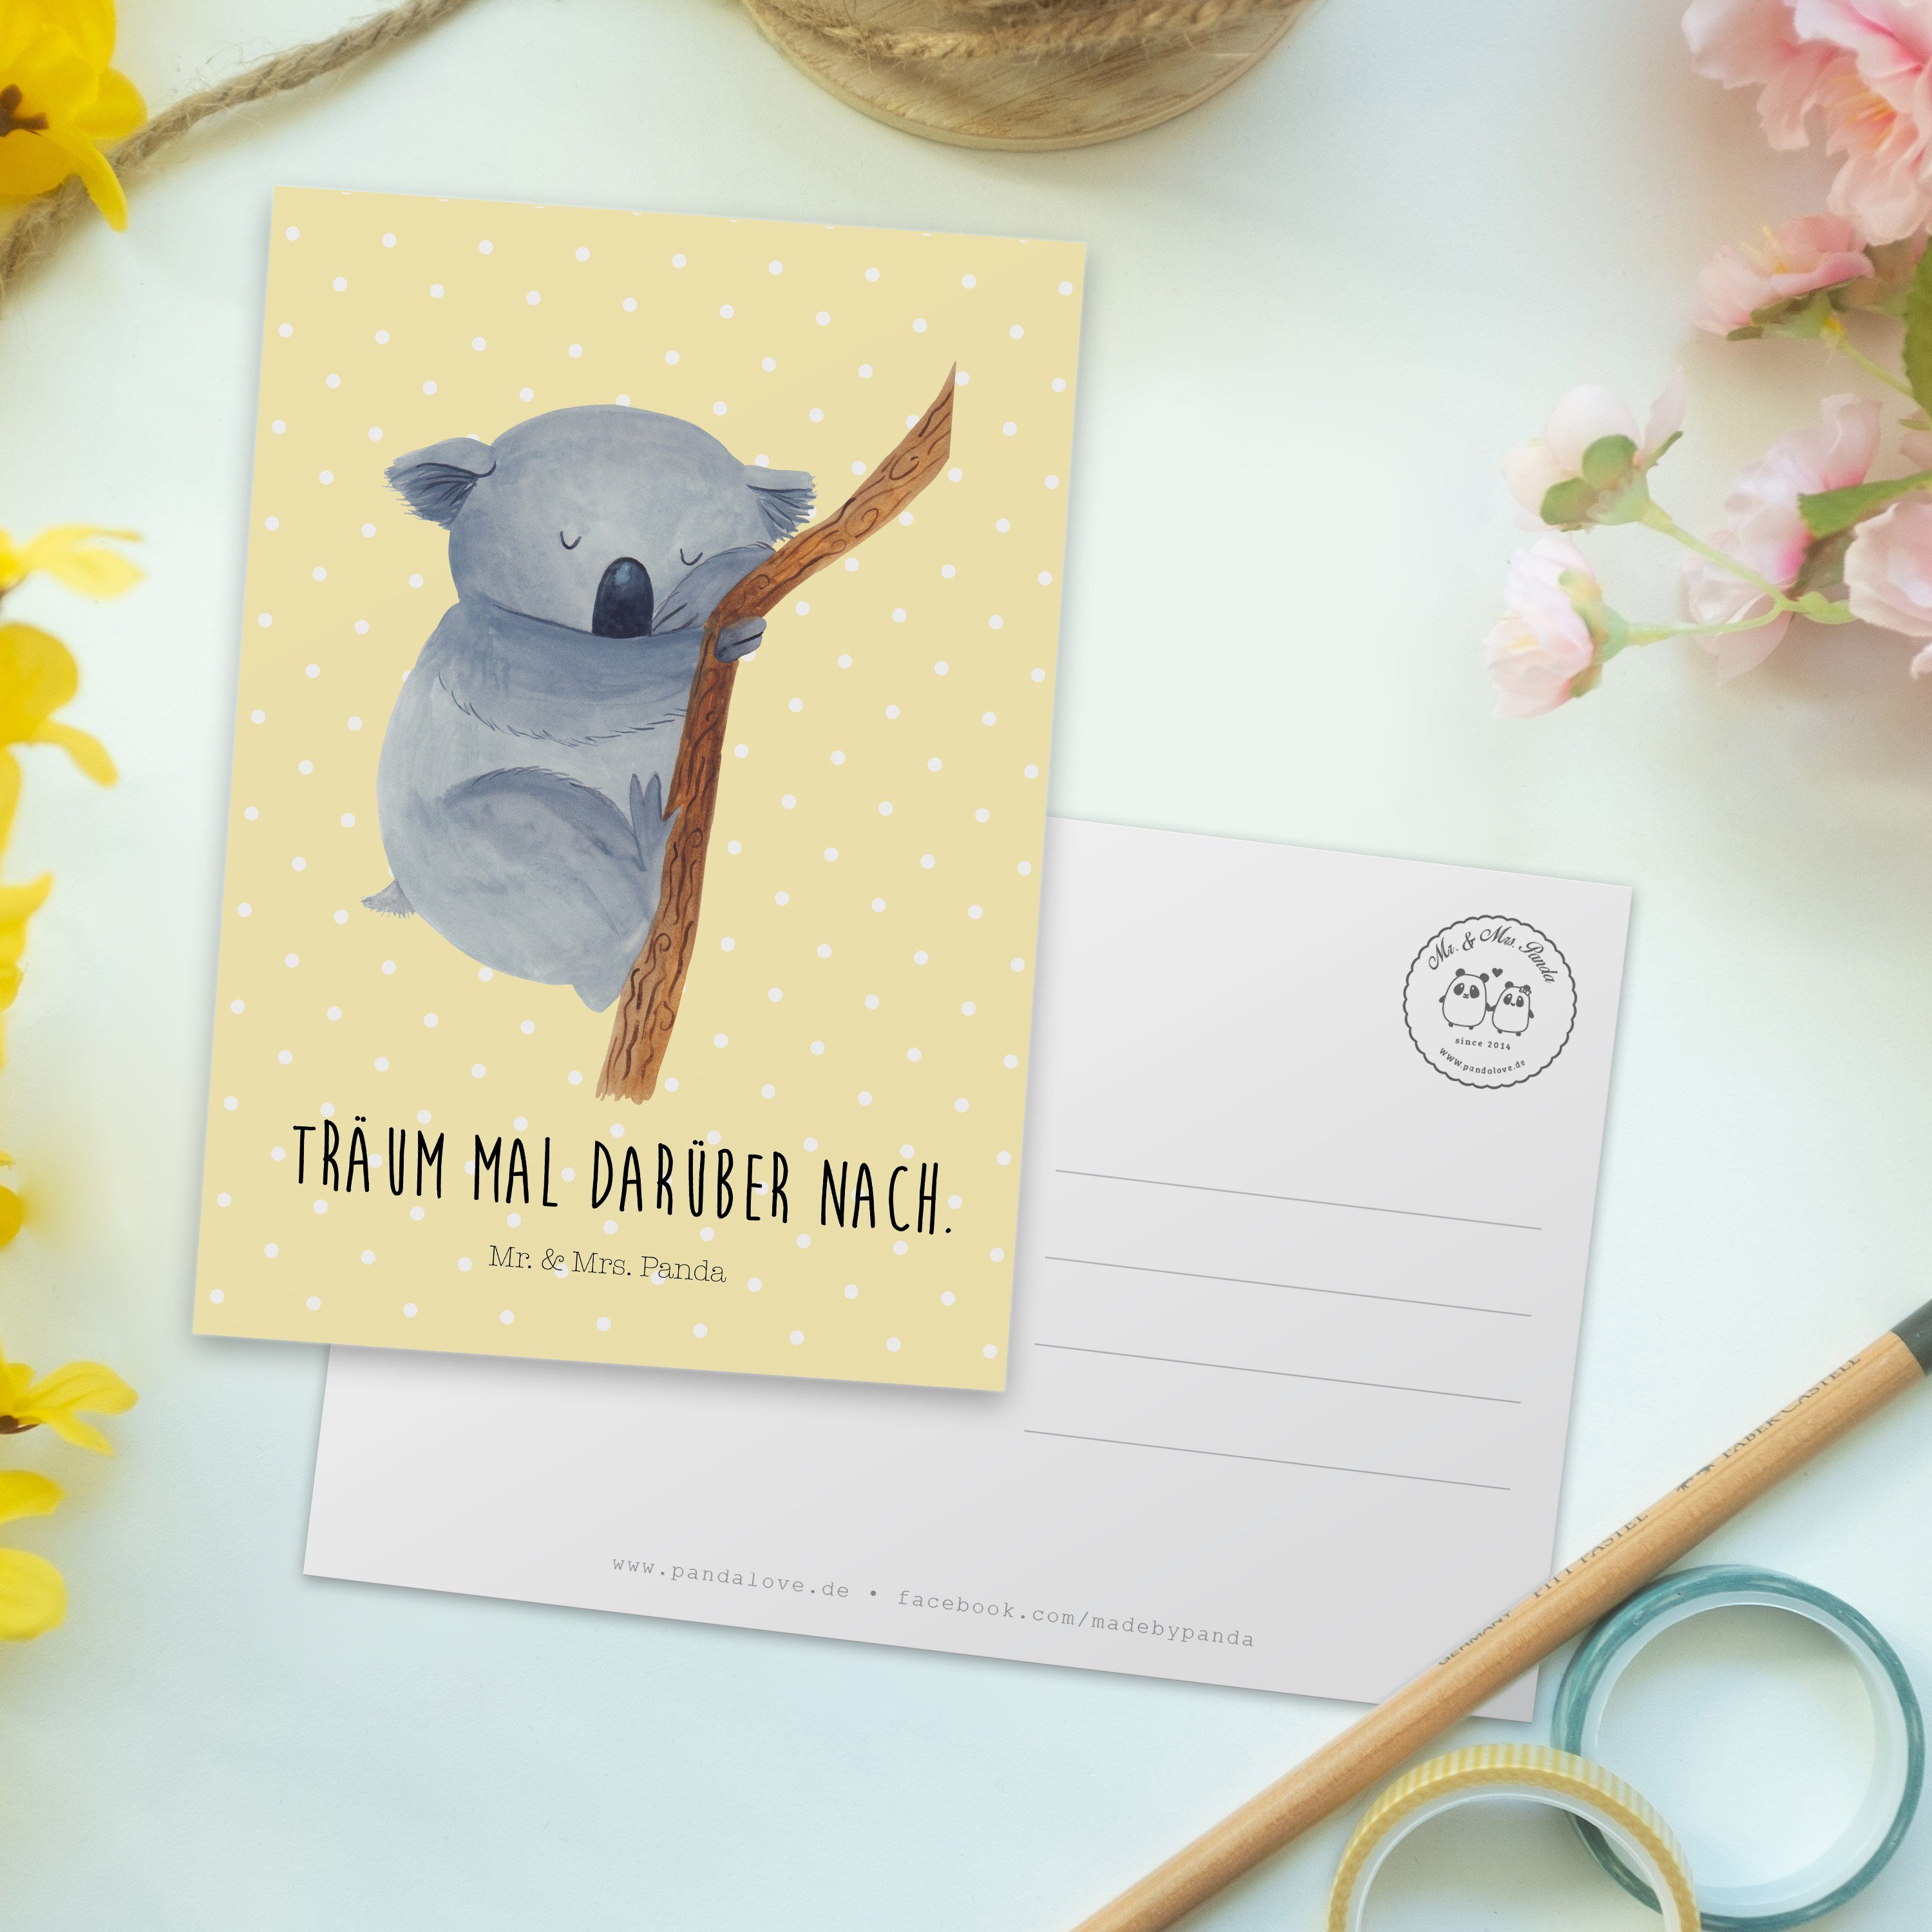 Mr. & Mrs. Panda Gelb Geschenk, Postkarte Einladun Schlafzimmer, Pastell - Traumland, Koalabär 